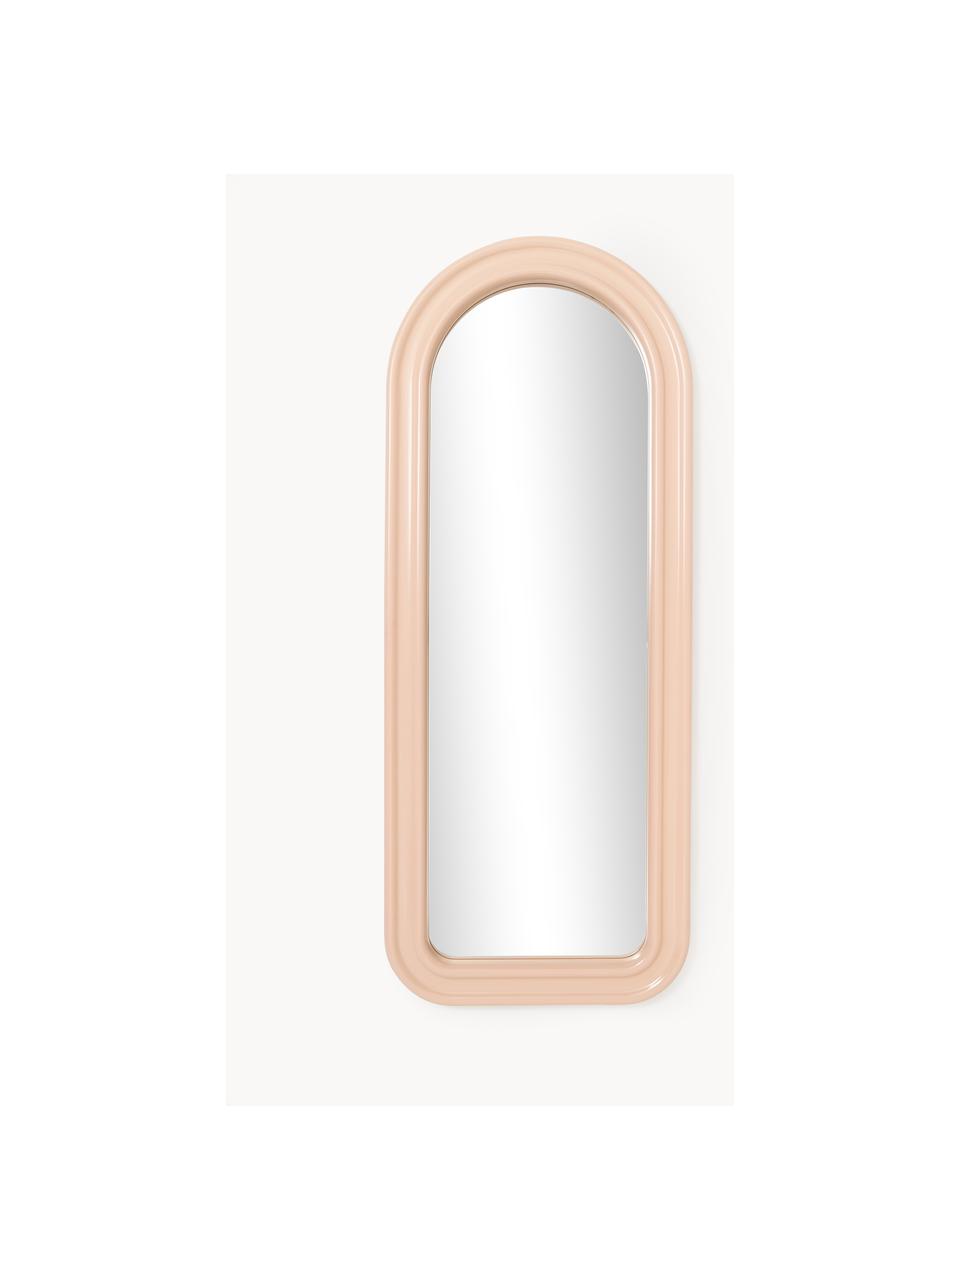 Ganzkörperspiegel Selim, Spiegelfläche: Spiegelglas Dieses Produk, Peach, B 70 x H 175 cm